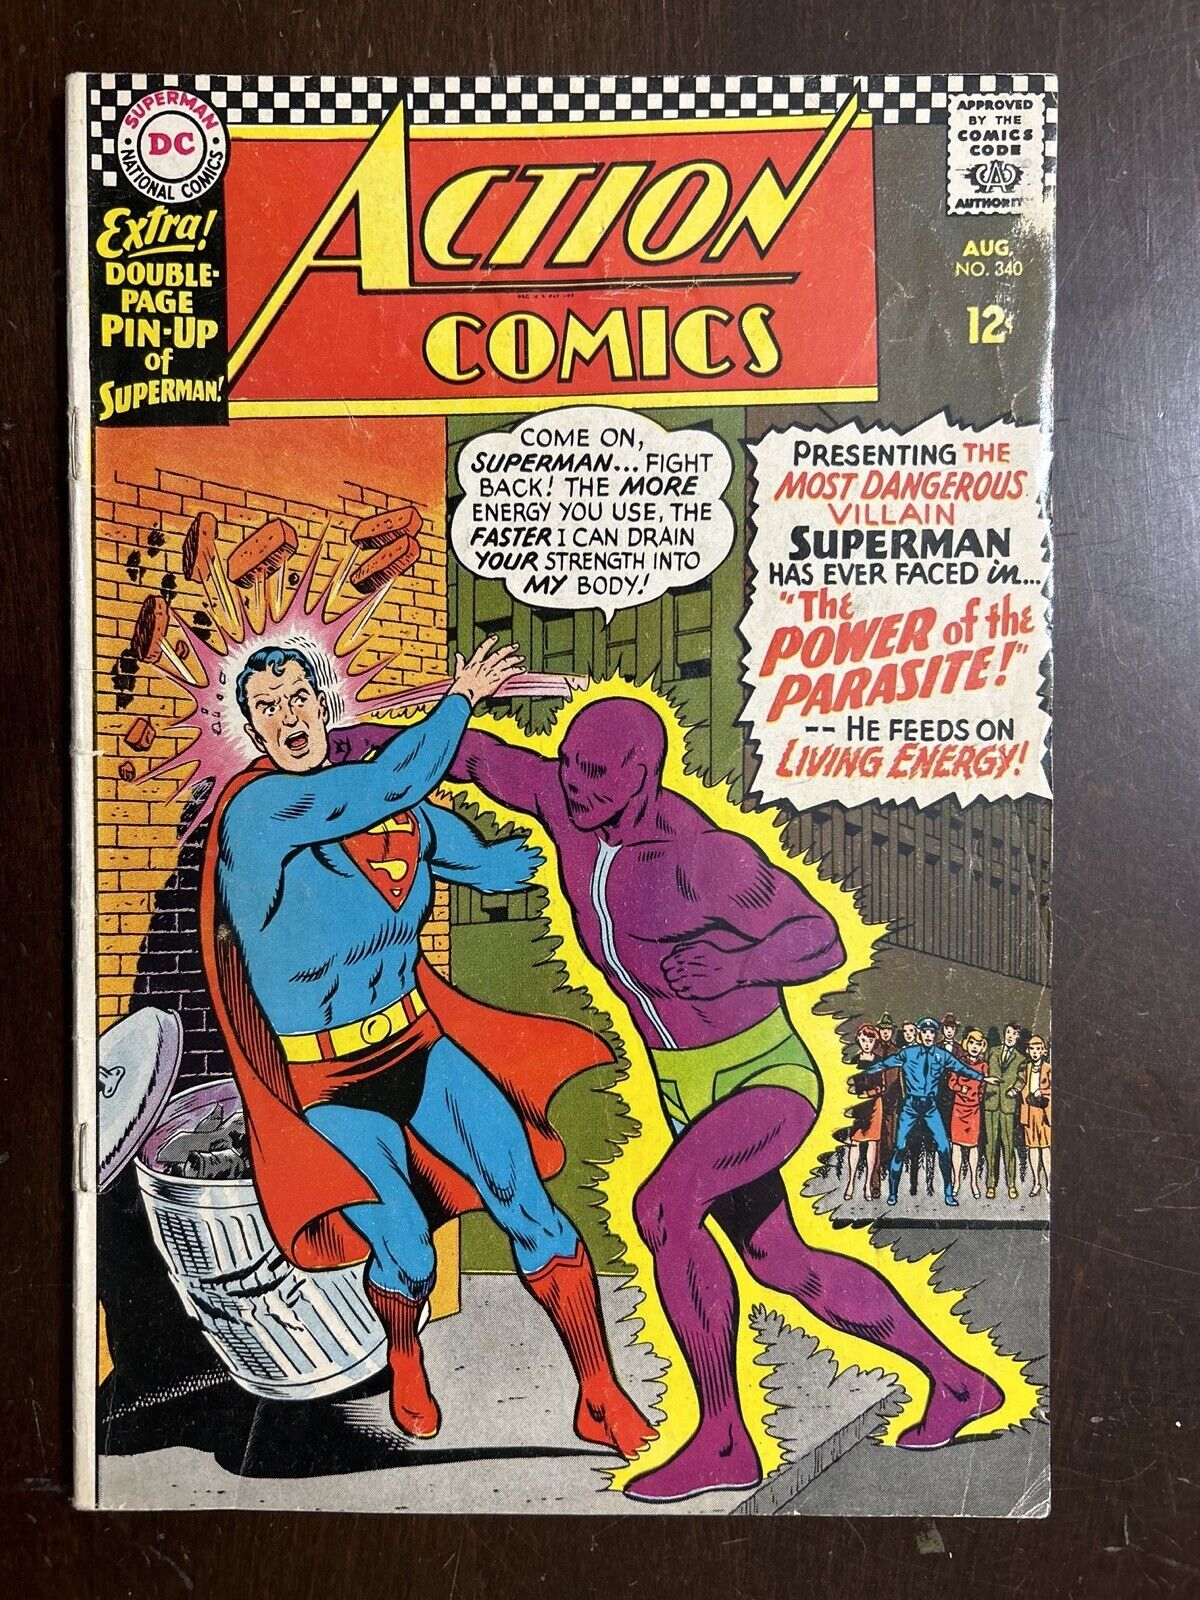 Action Comics #340 G/VG 3.0 1st App Parasite DC COMICS 1966 w/ Pin Up Poster